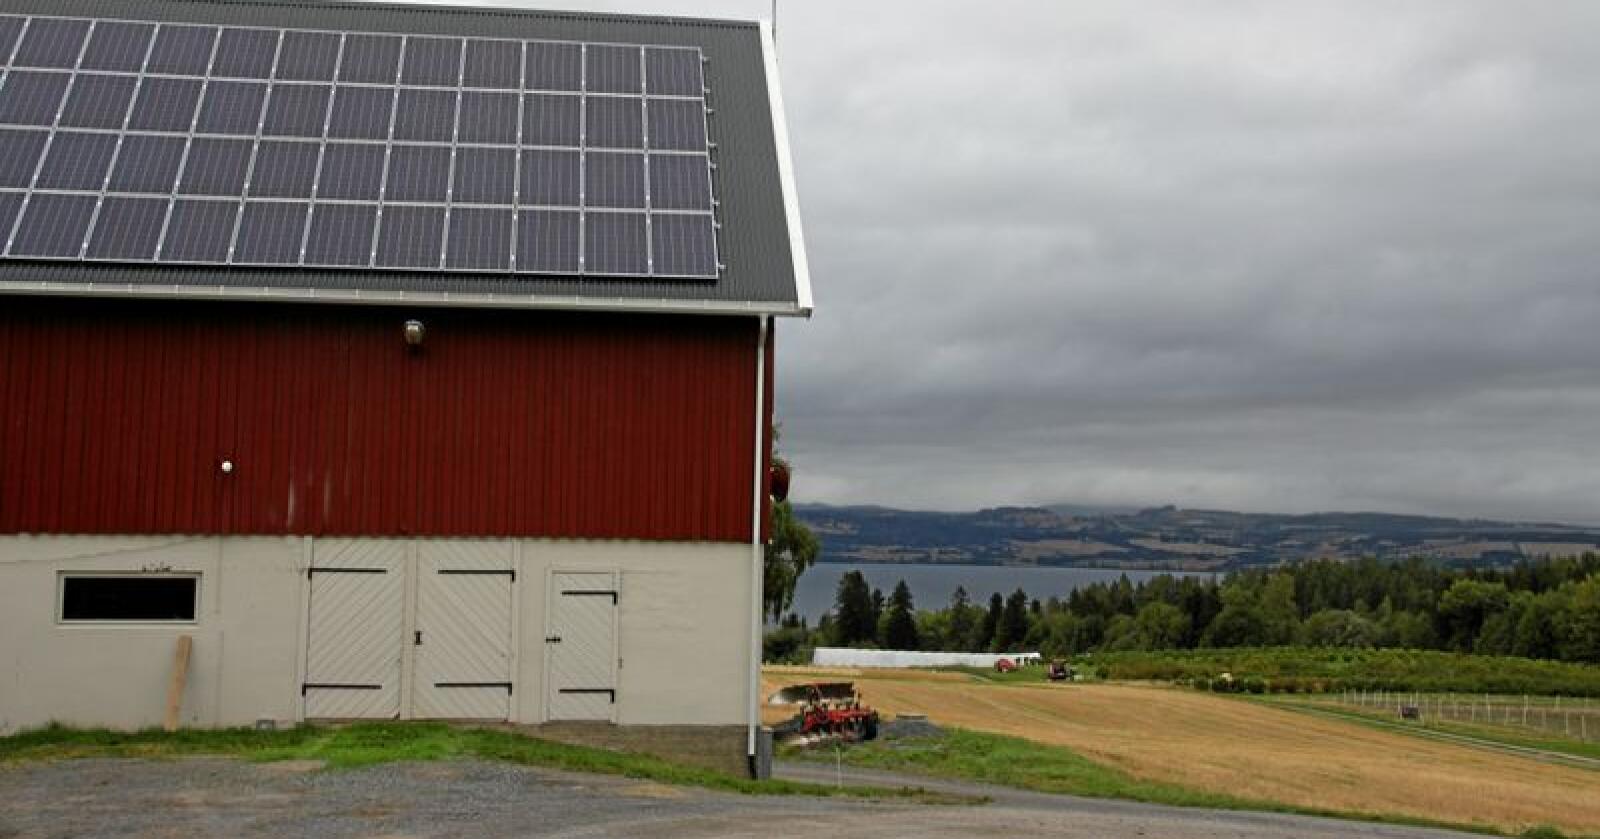 MDG vil legge solceller på 15 prosent av takene i landbruket. Foto: Lars Bilit Hagen